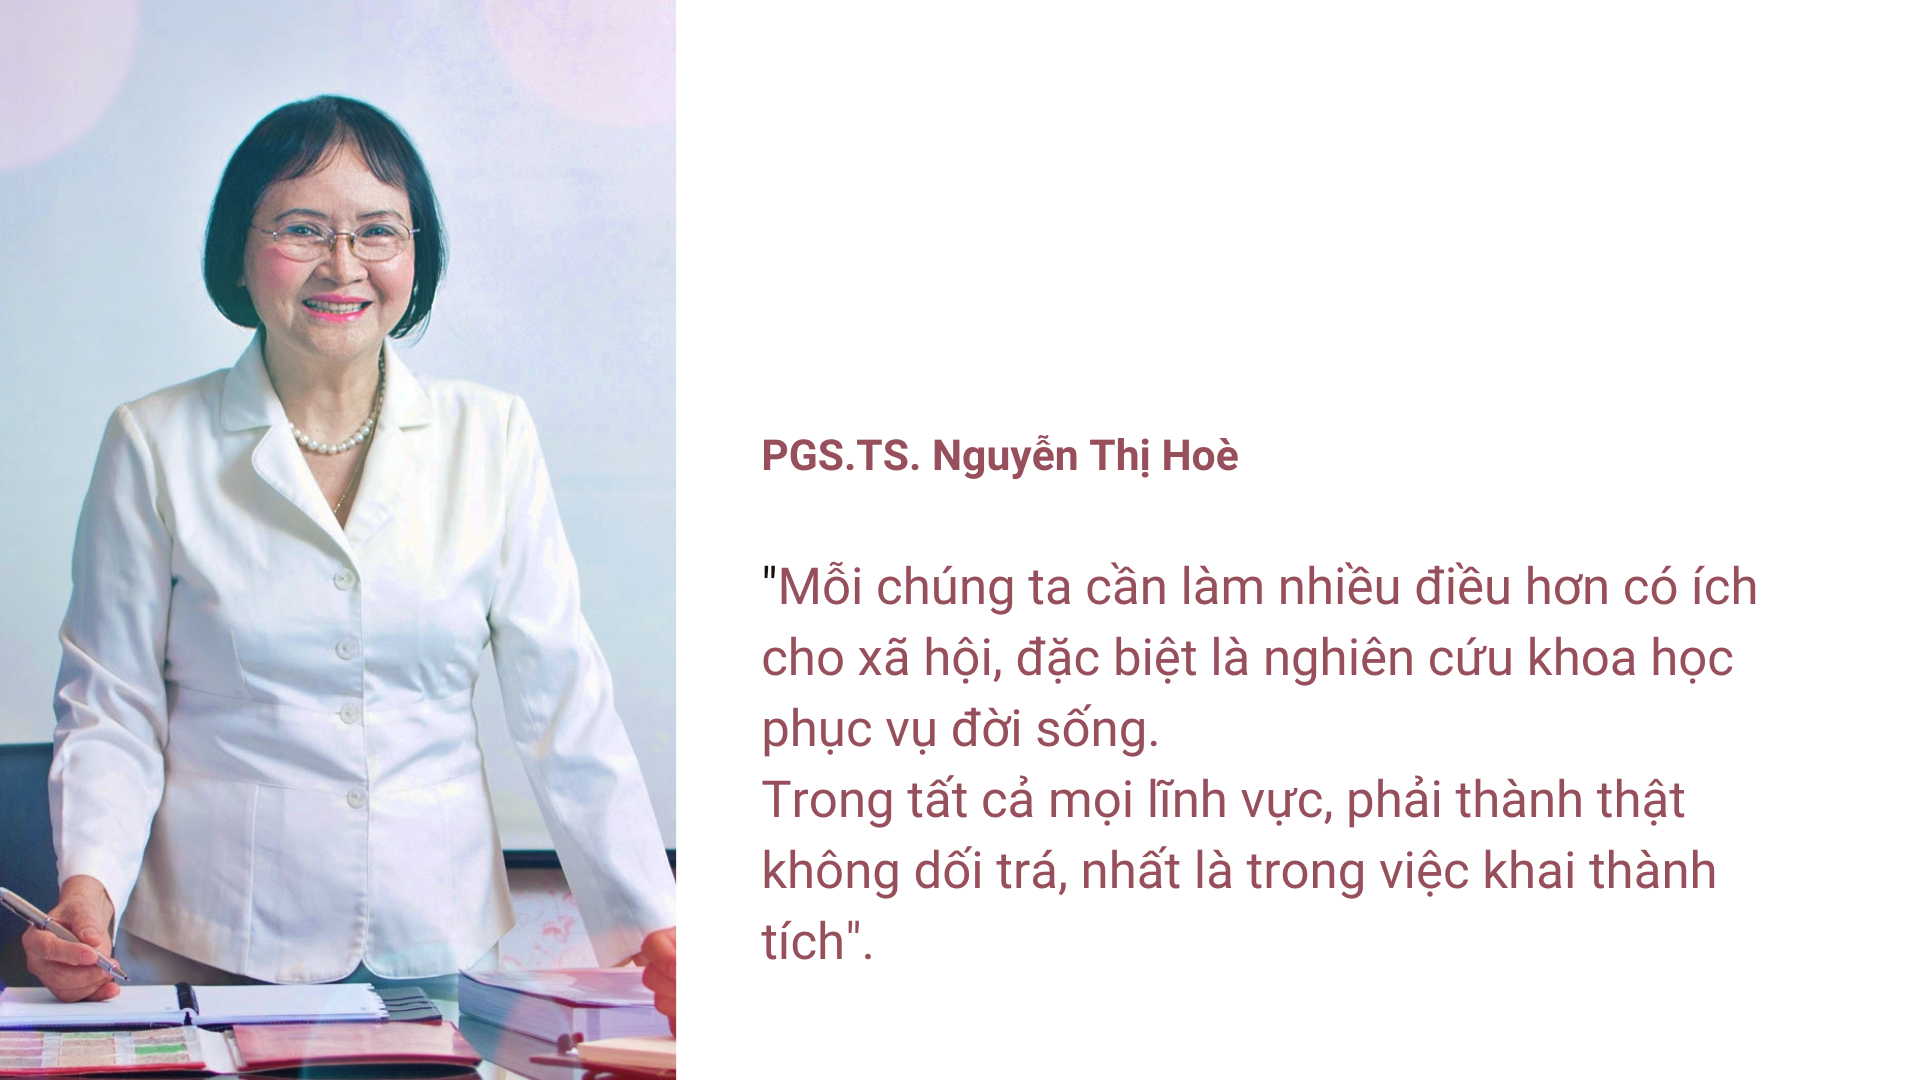 PGS.TS Nguyễn Thị Hòe: Làm khoa học thì không nói suông - Ảnh 2.